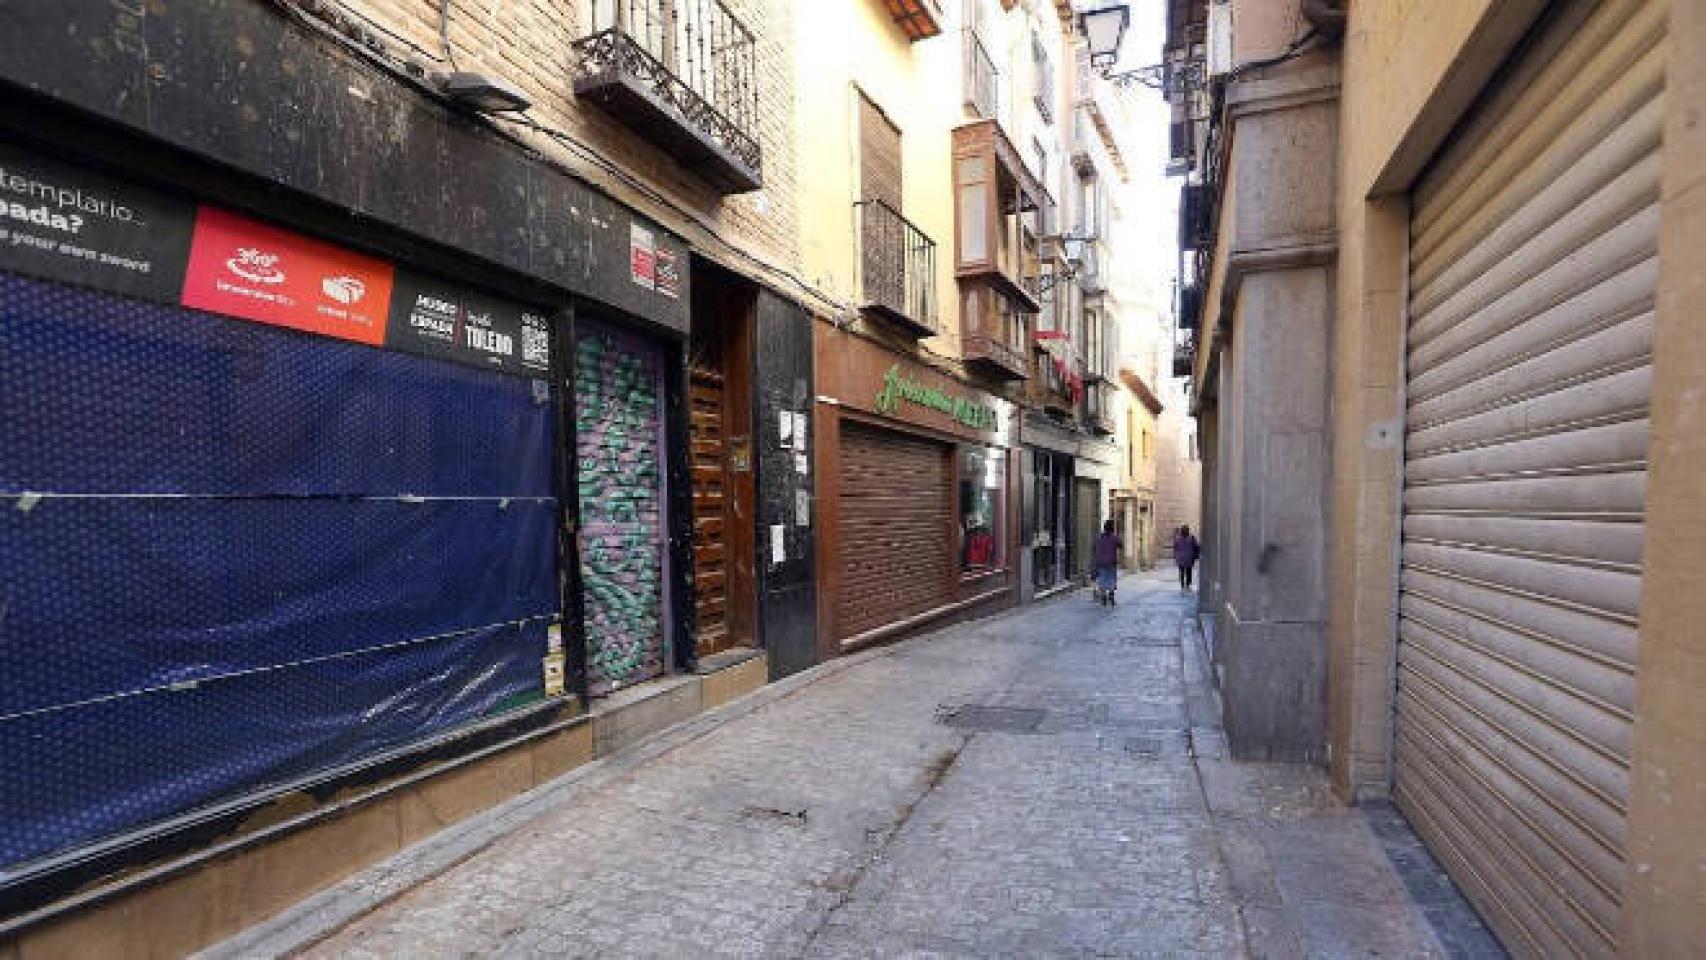 Locales cerrados en el Casco Histórico de Toledo. Foto: Óscar Huertas